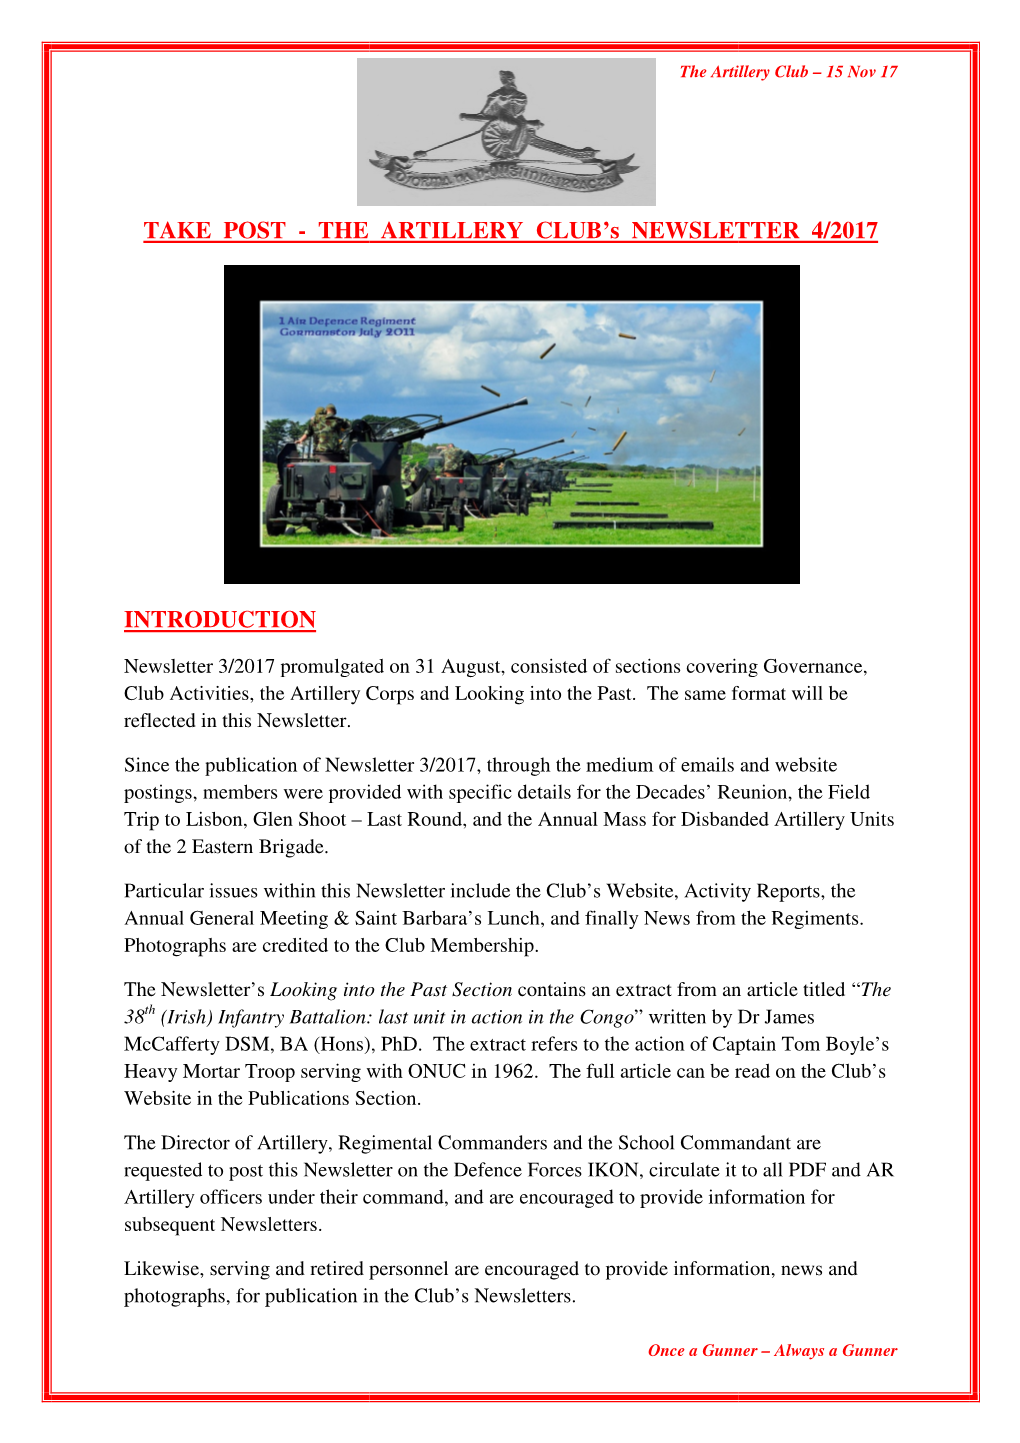 Artillery Club Newsletter 4 of 2017 (V 15 Nov